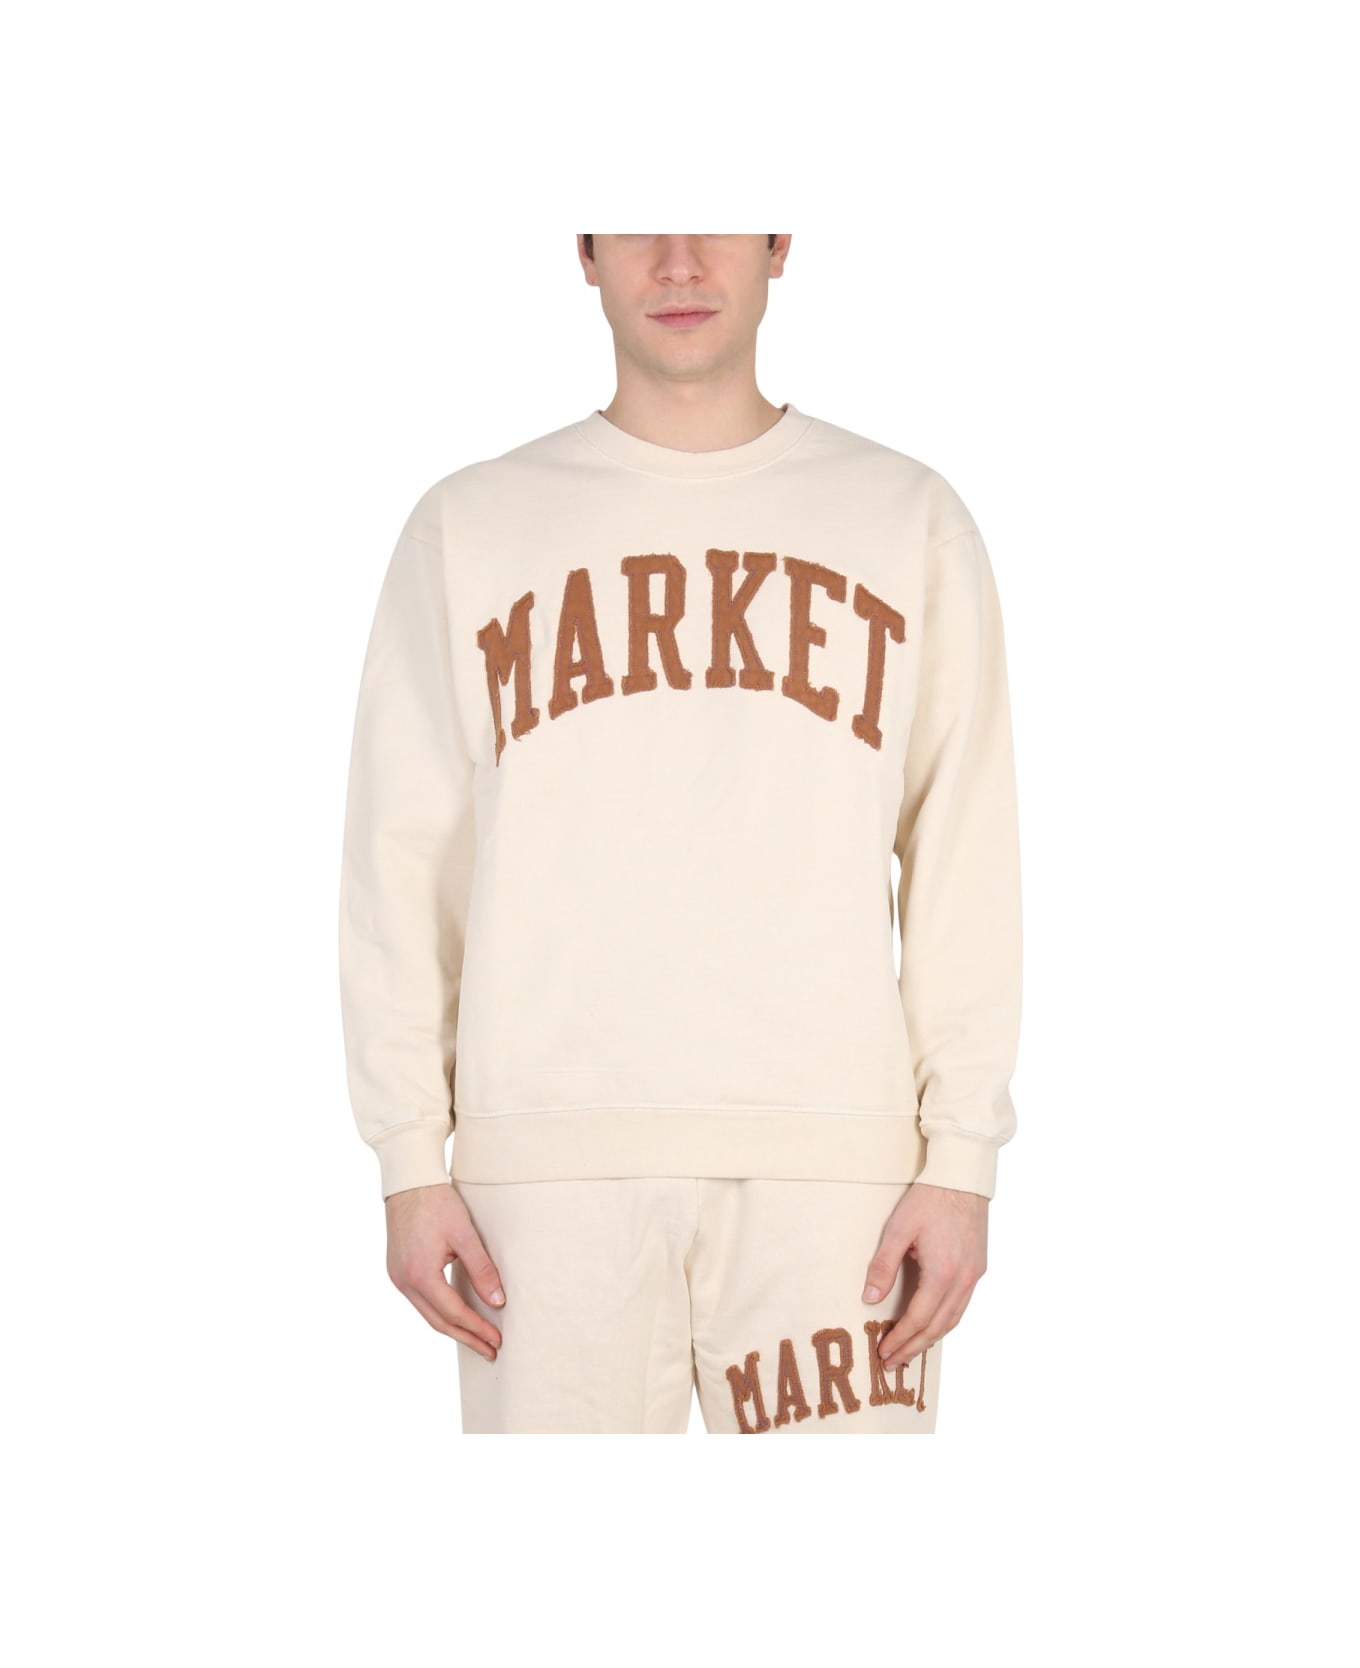 Market Vintage Wash Sweatshirt - BEIGE